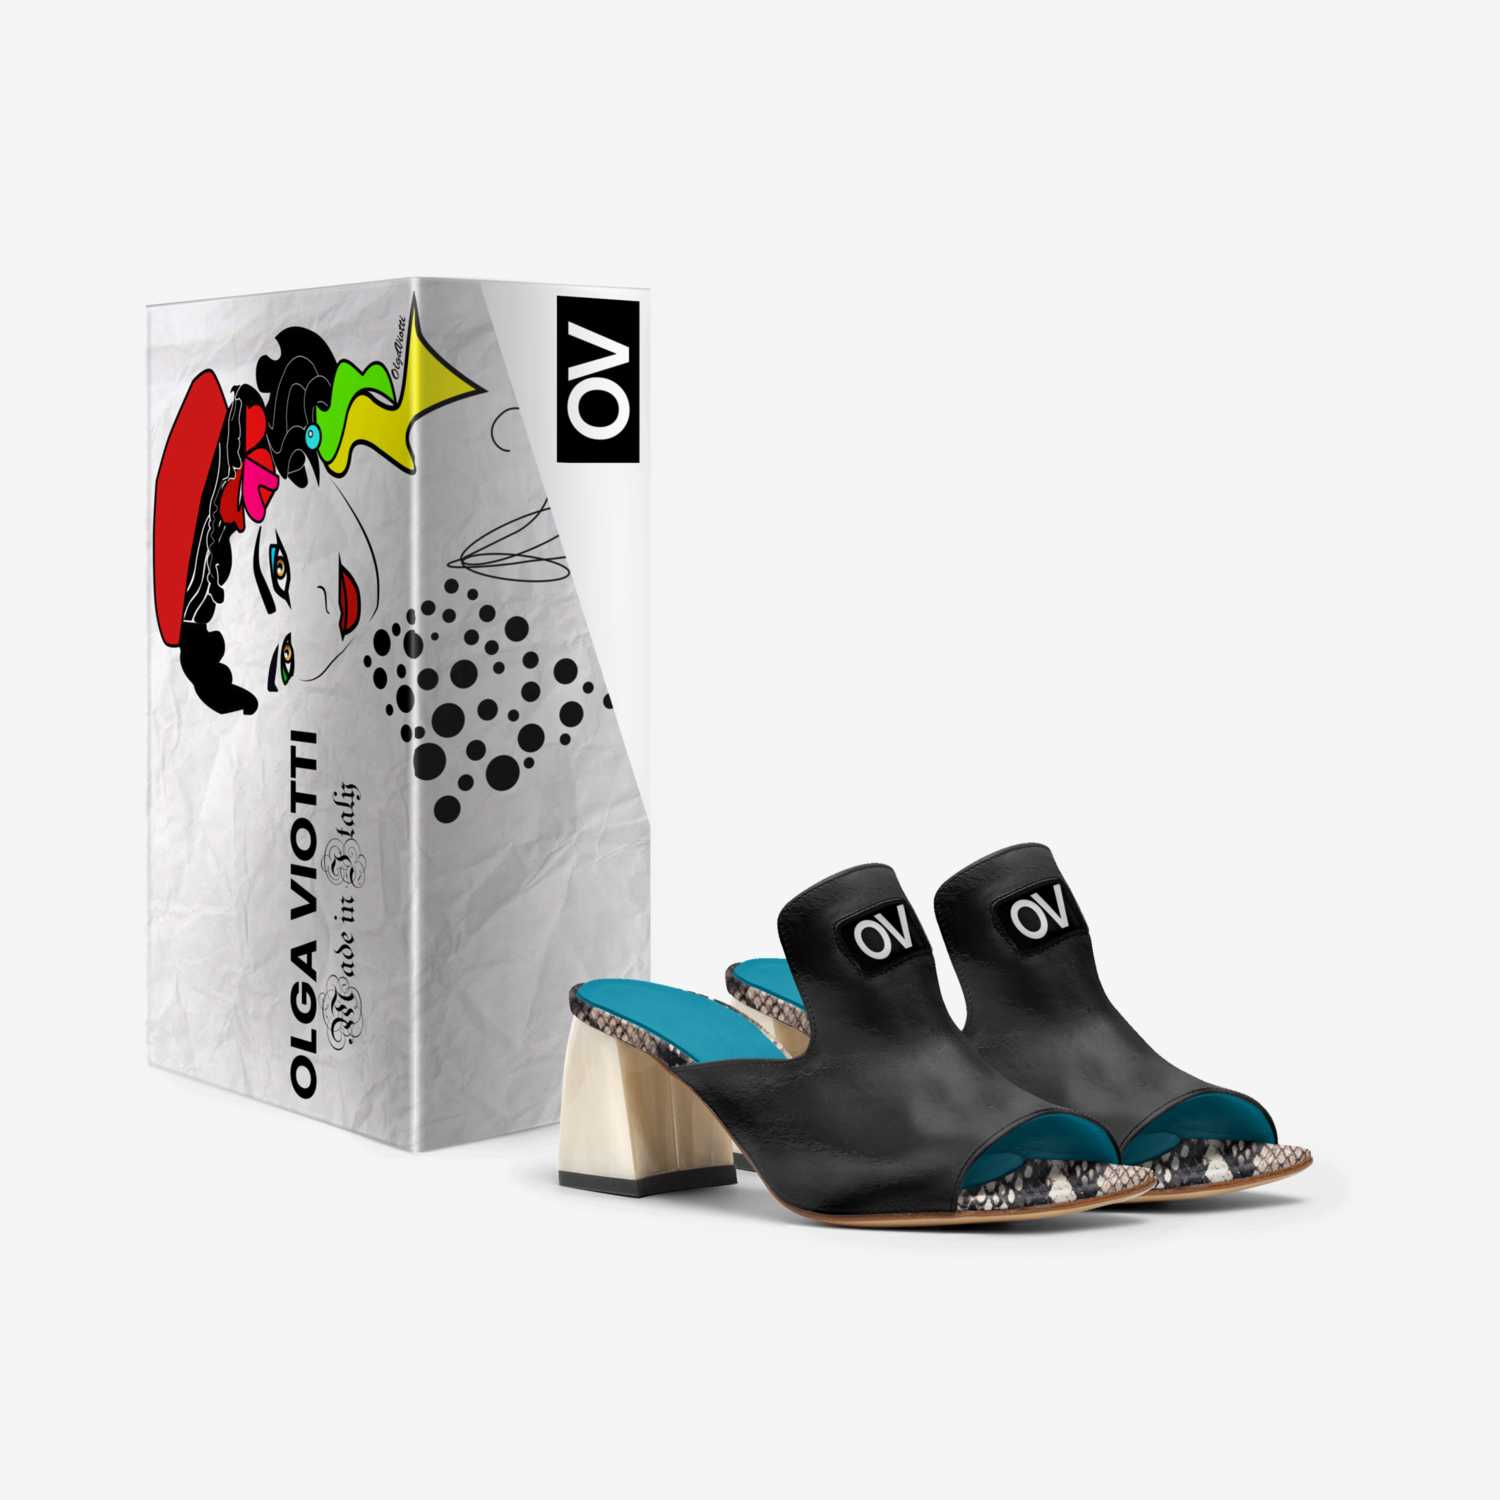 OLGA VIOTTI OV  custom made in Italy shoes by Olga Viotti | Box view